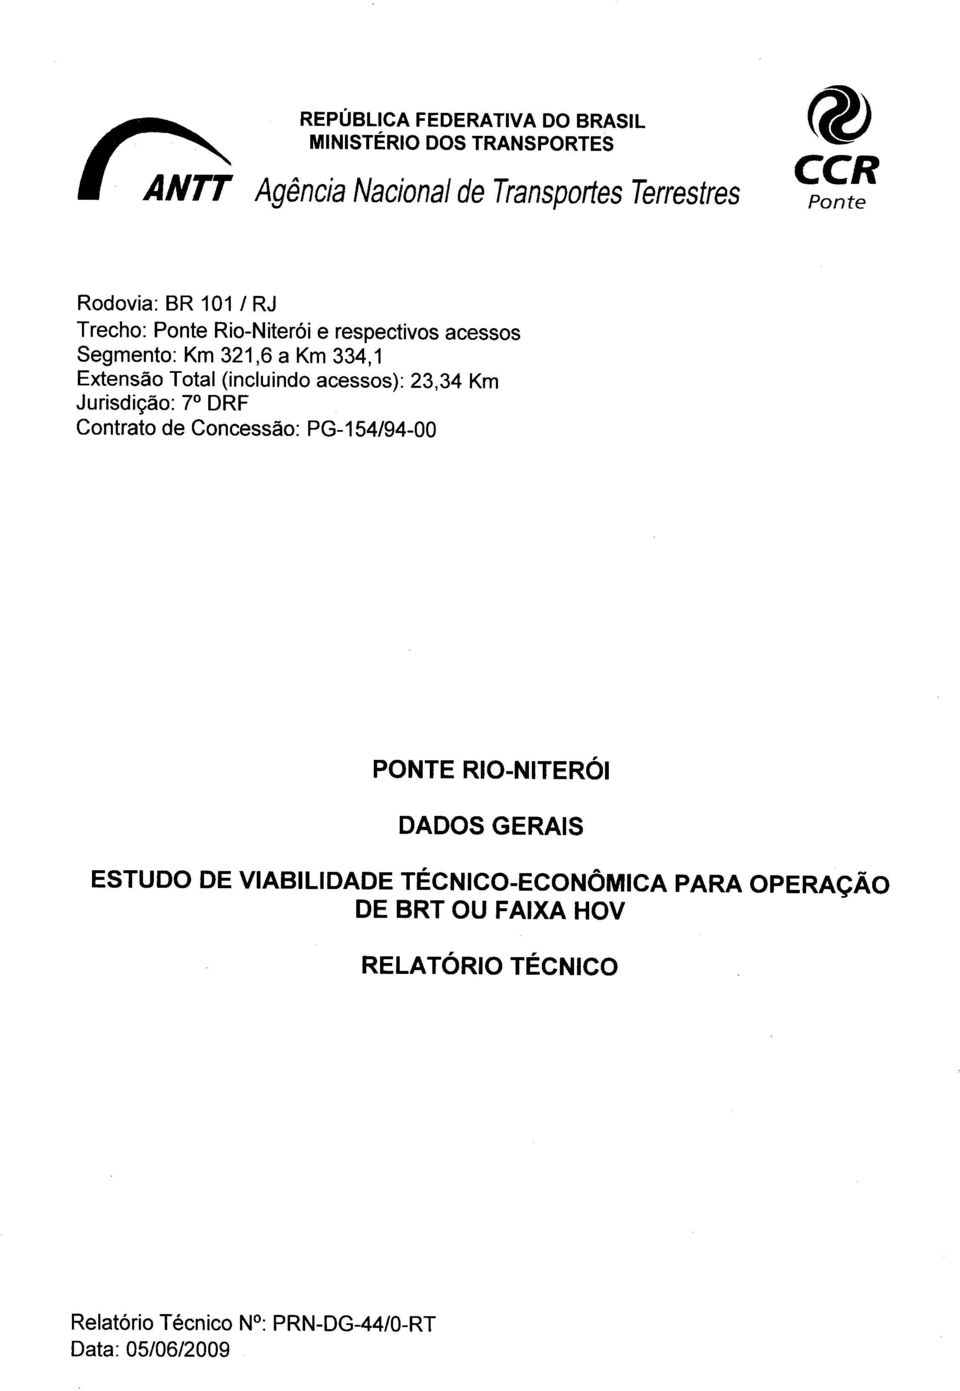 acessos): 23,34 Km Jurisdição: 7 DRF Contrato de Concessão: PG-154/94-00 PONTE RIO-NITERÓI DADOS GERAIS ESTUDO DE